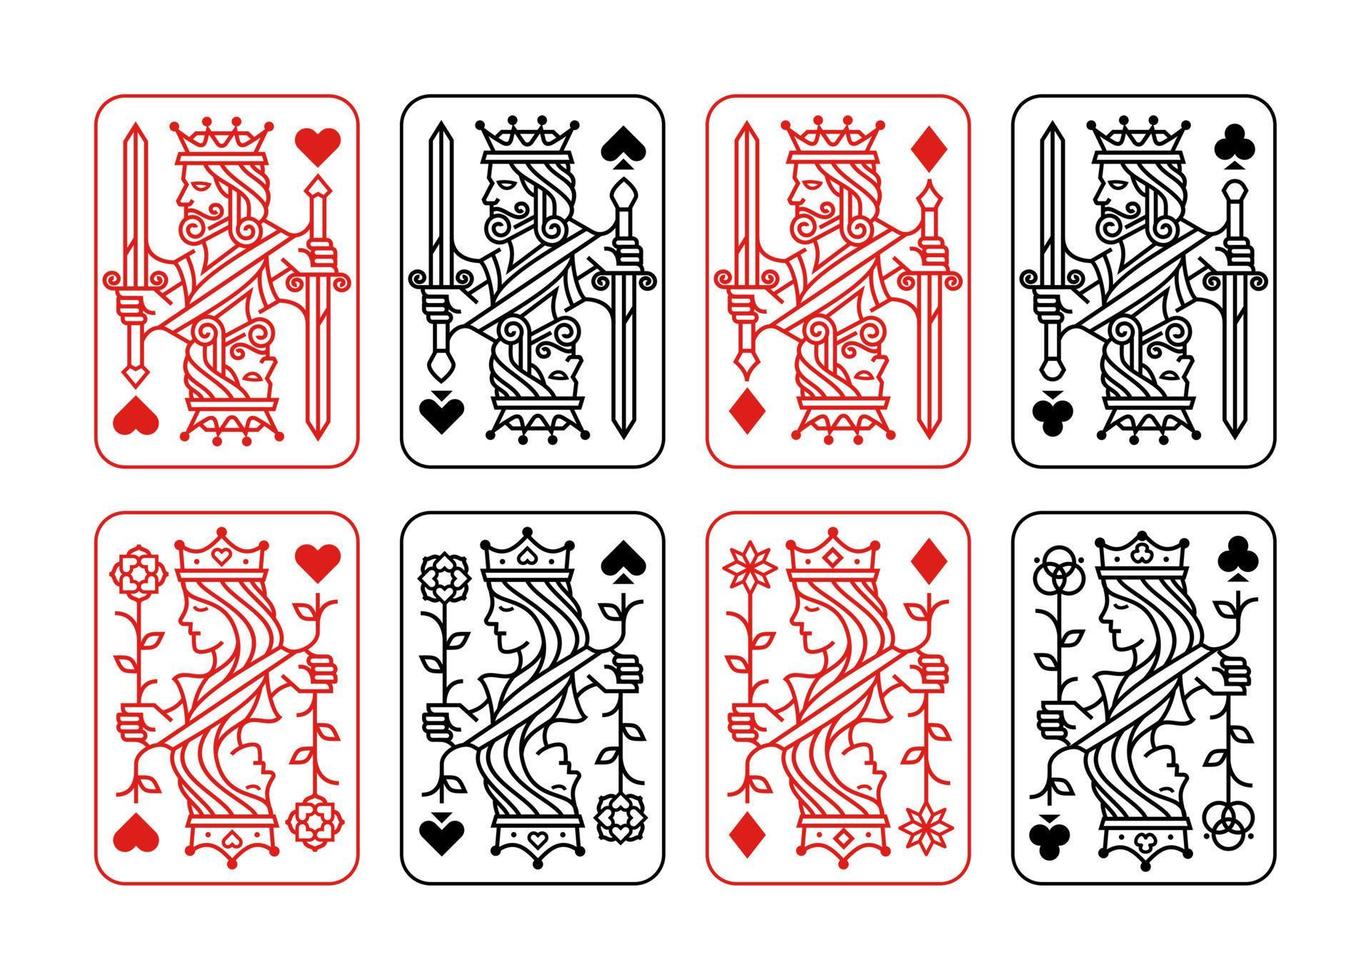 könig und königin spielkarte vektor illustration satz von herzen, spaten, karo und keule, königliche karten design sammlung